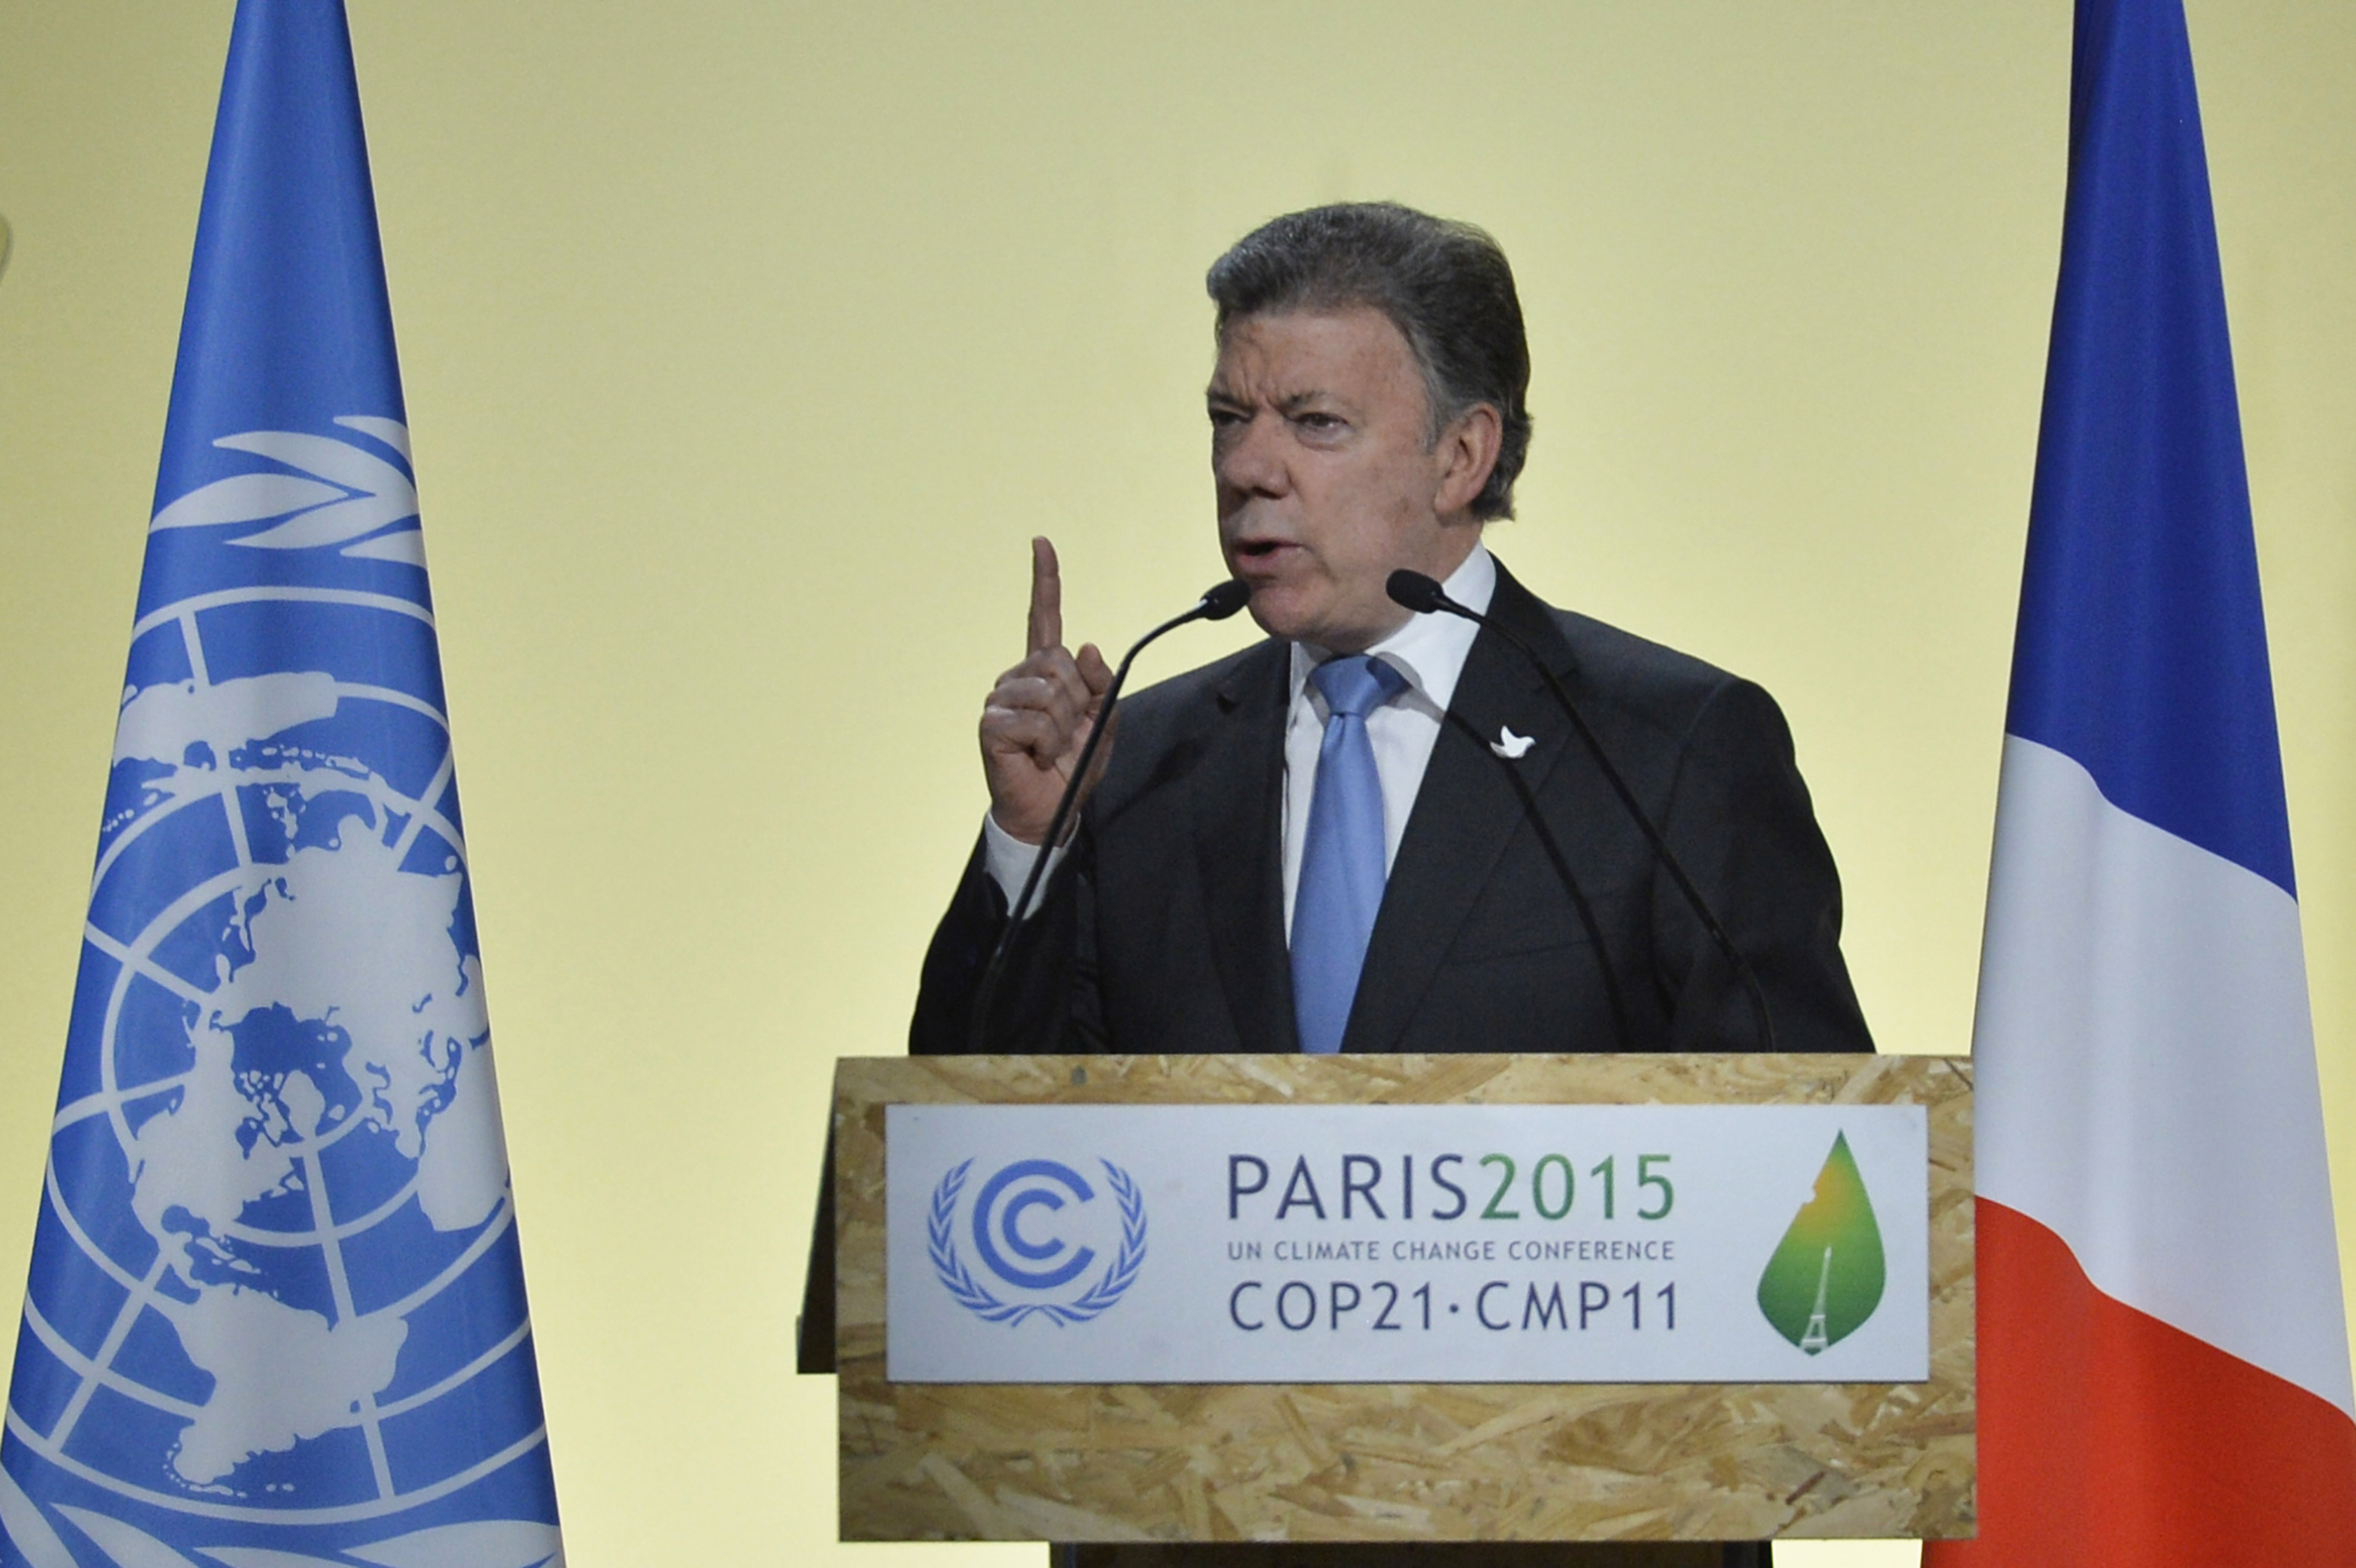 COP21 (November 2015)